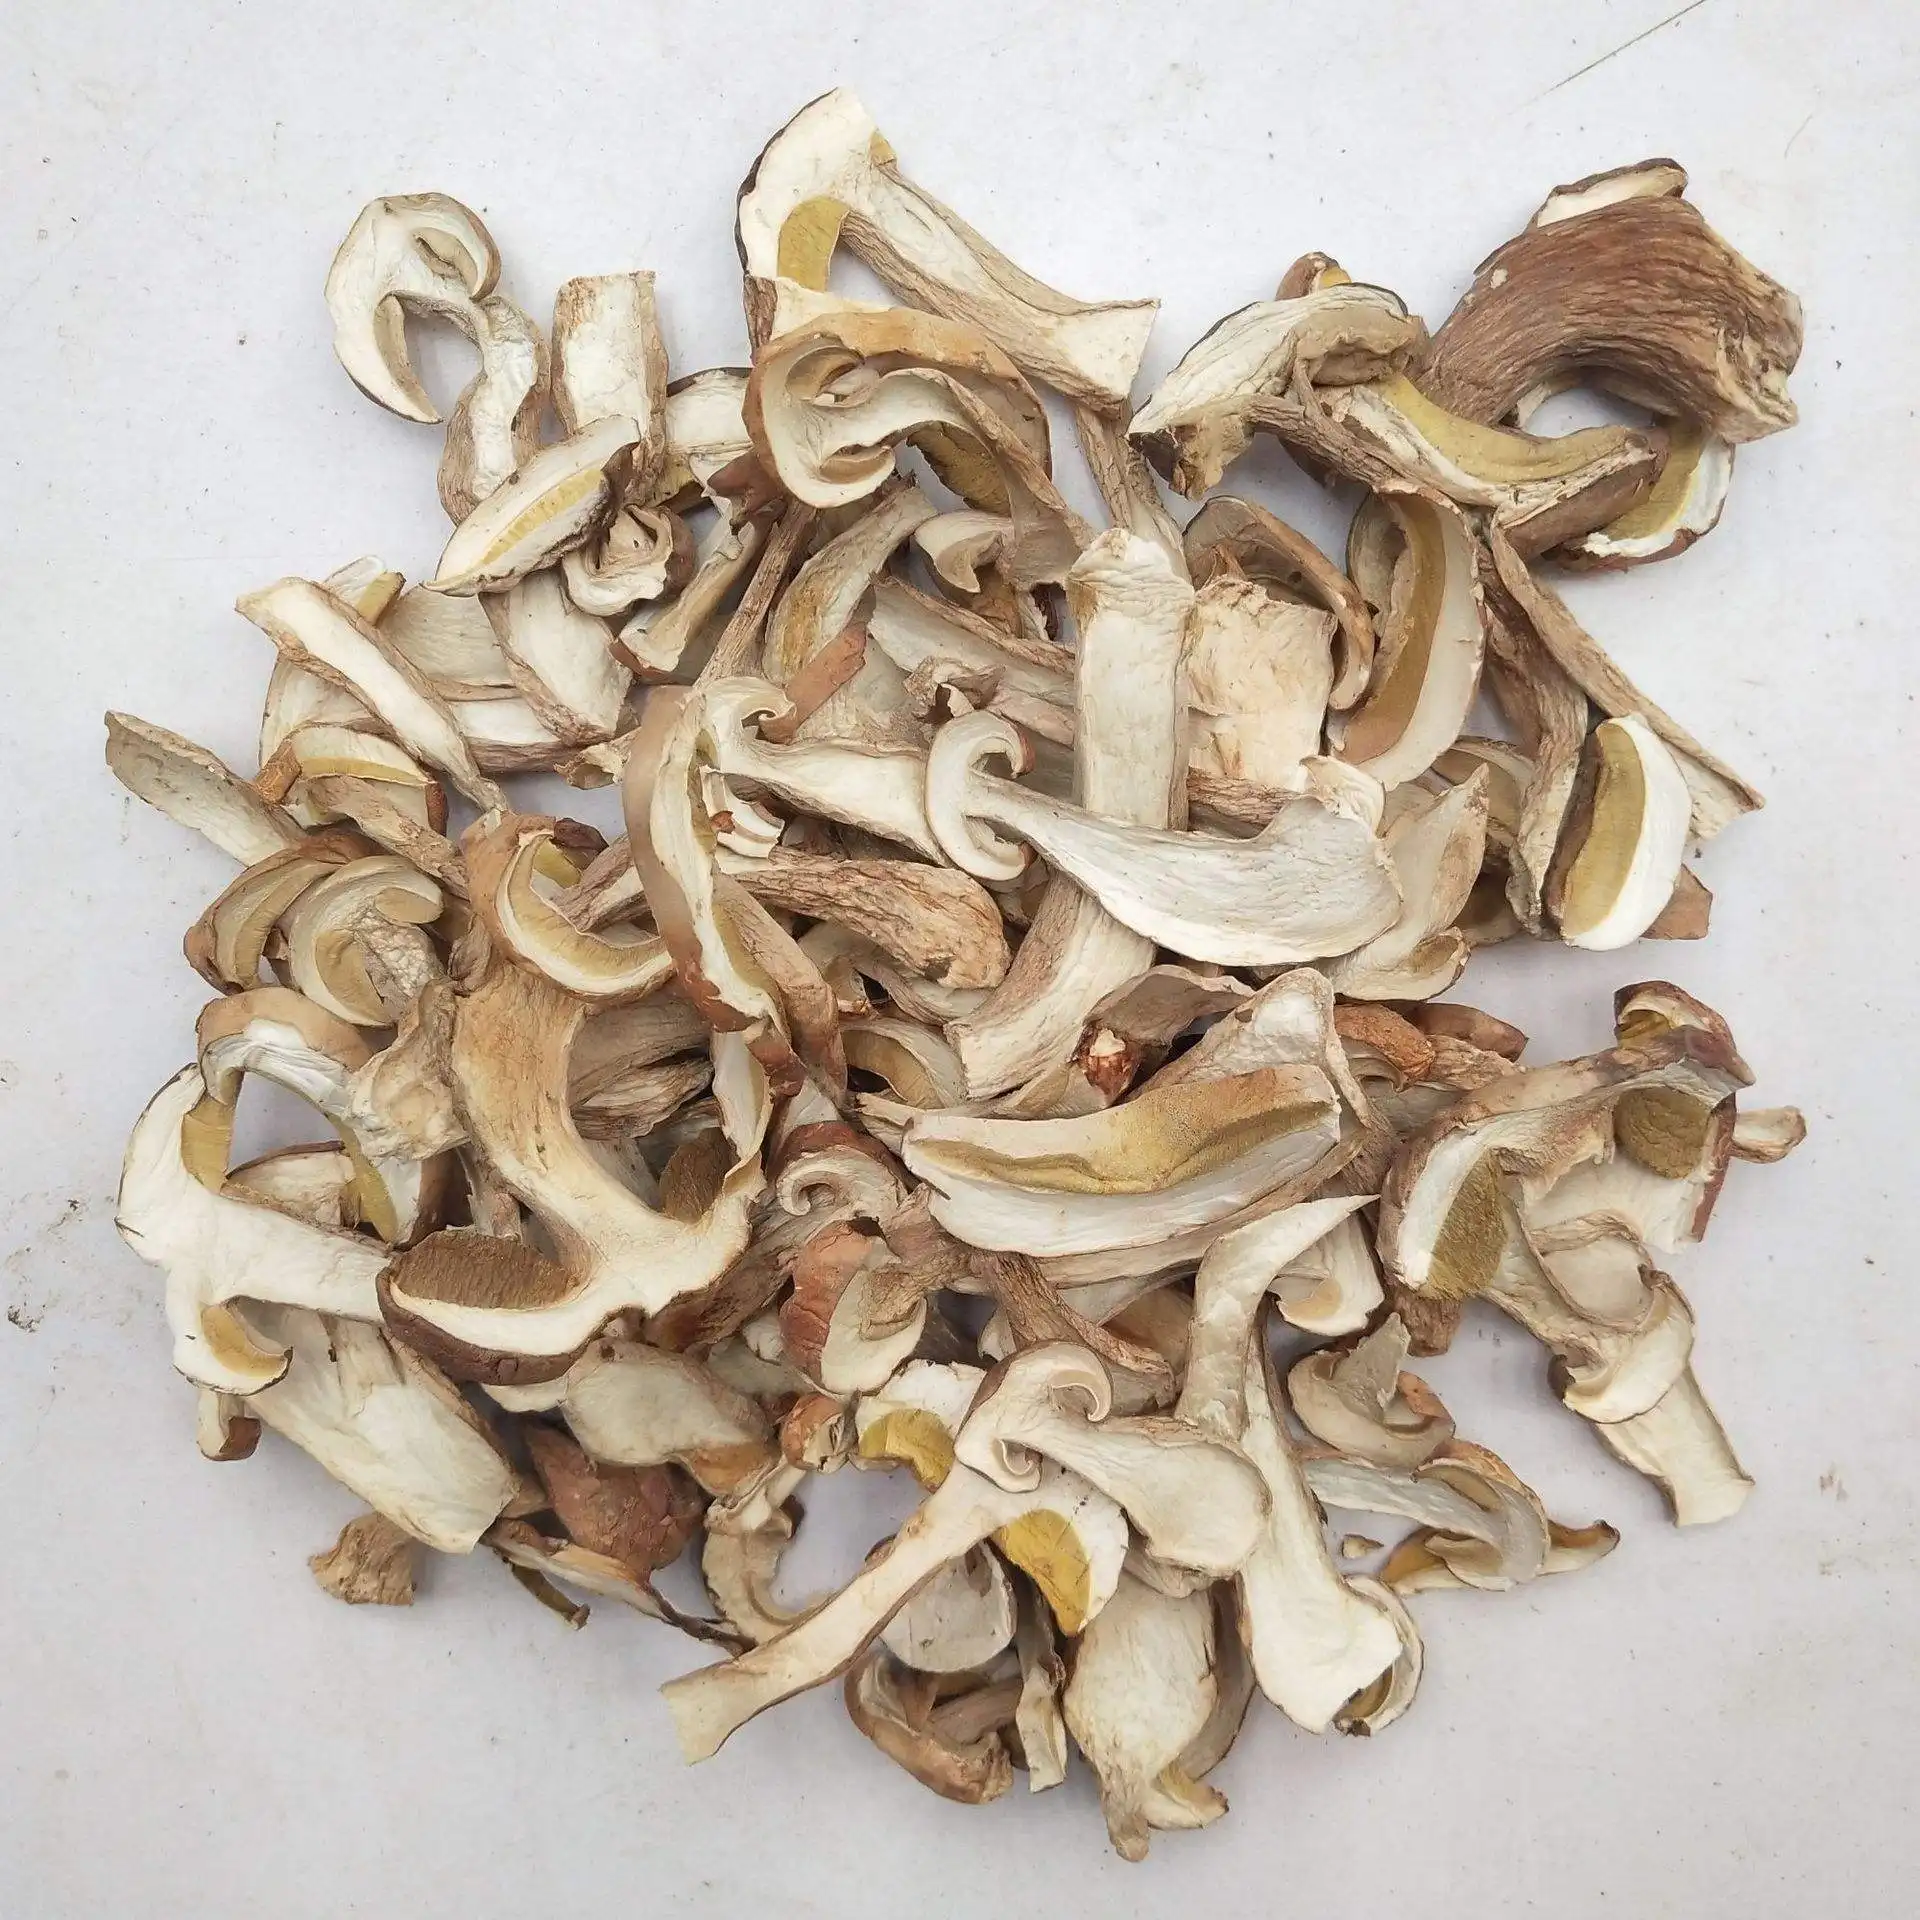 Дикие сушеные белые грибы, нарезанные боровиком